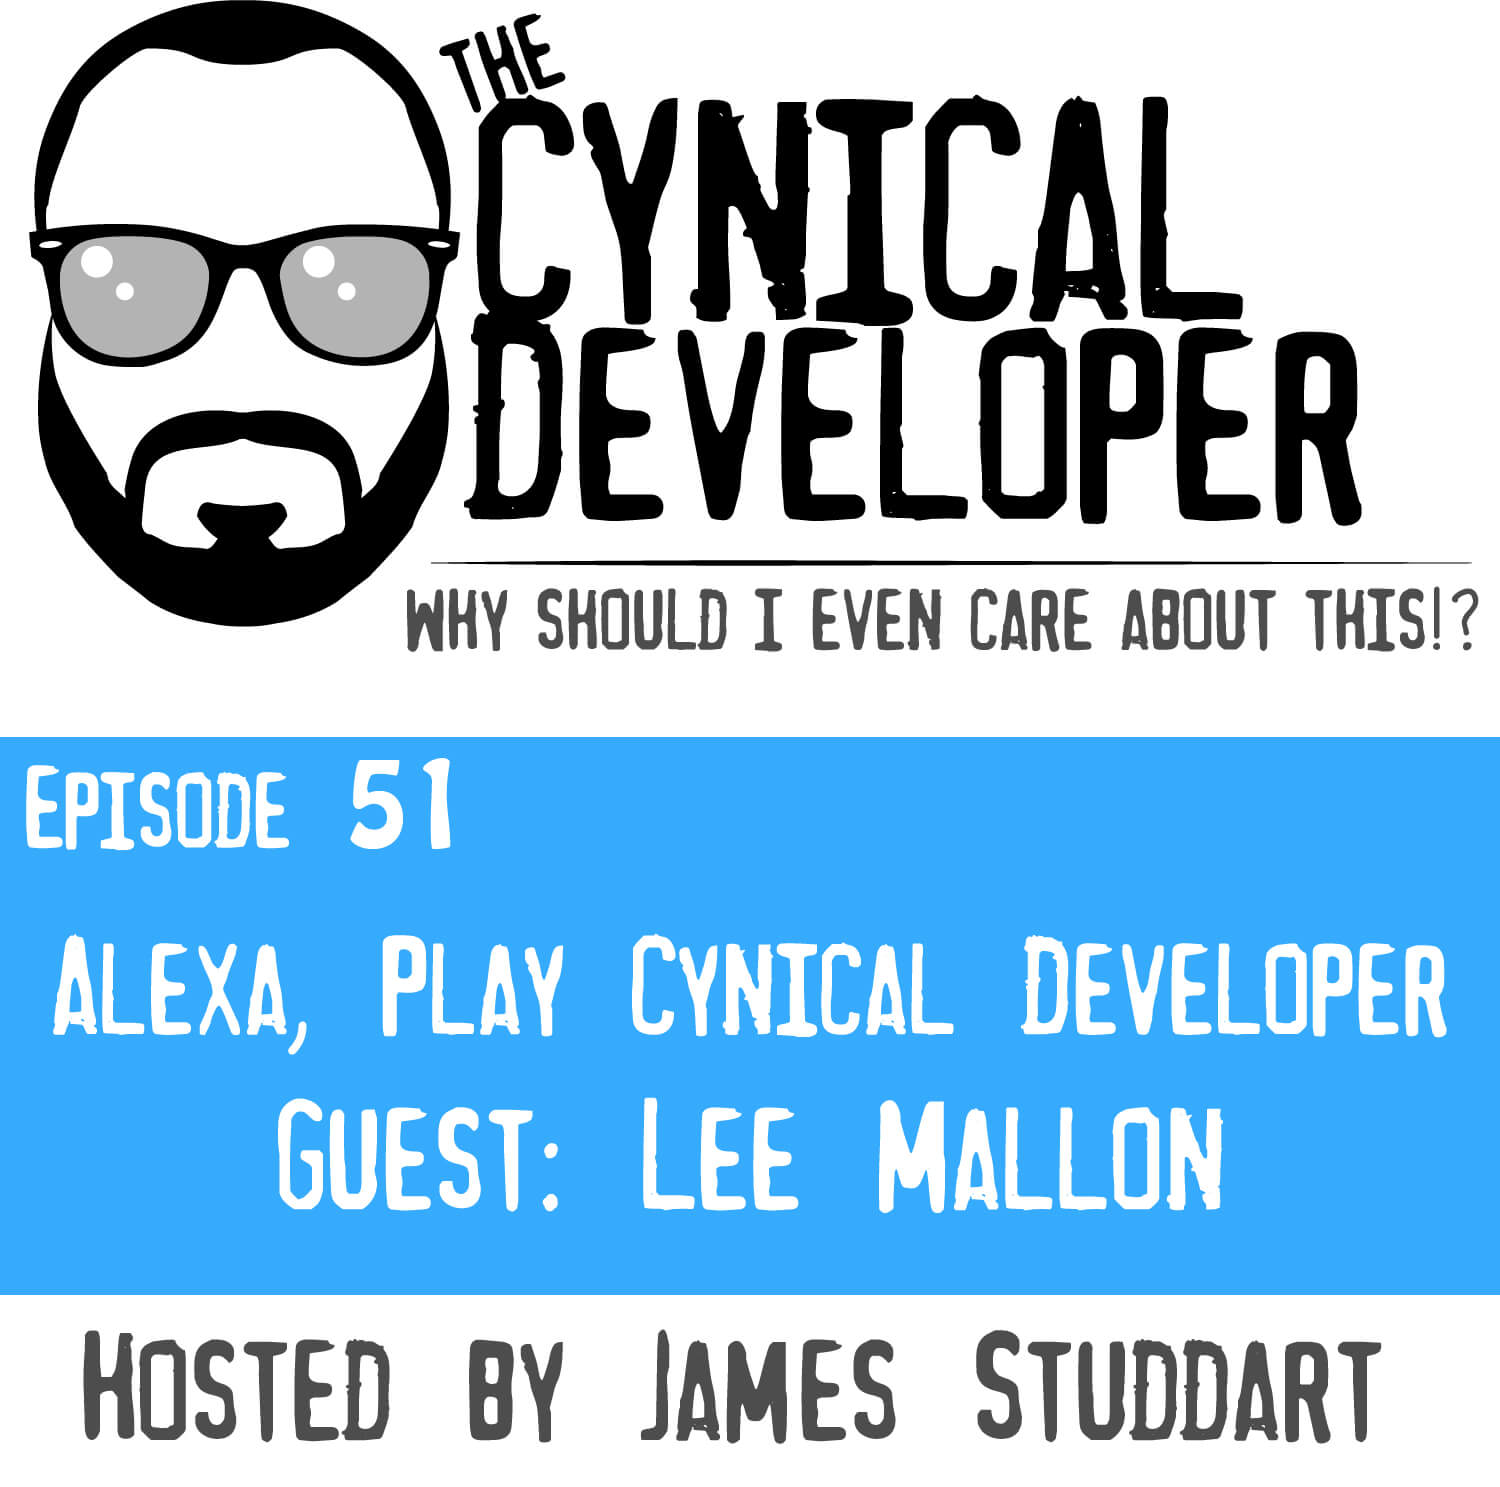 Episode 51 - Alexa play Cynical Developer!